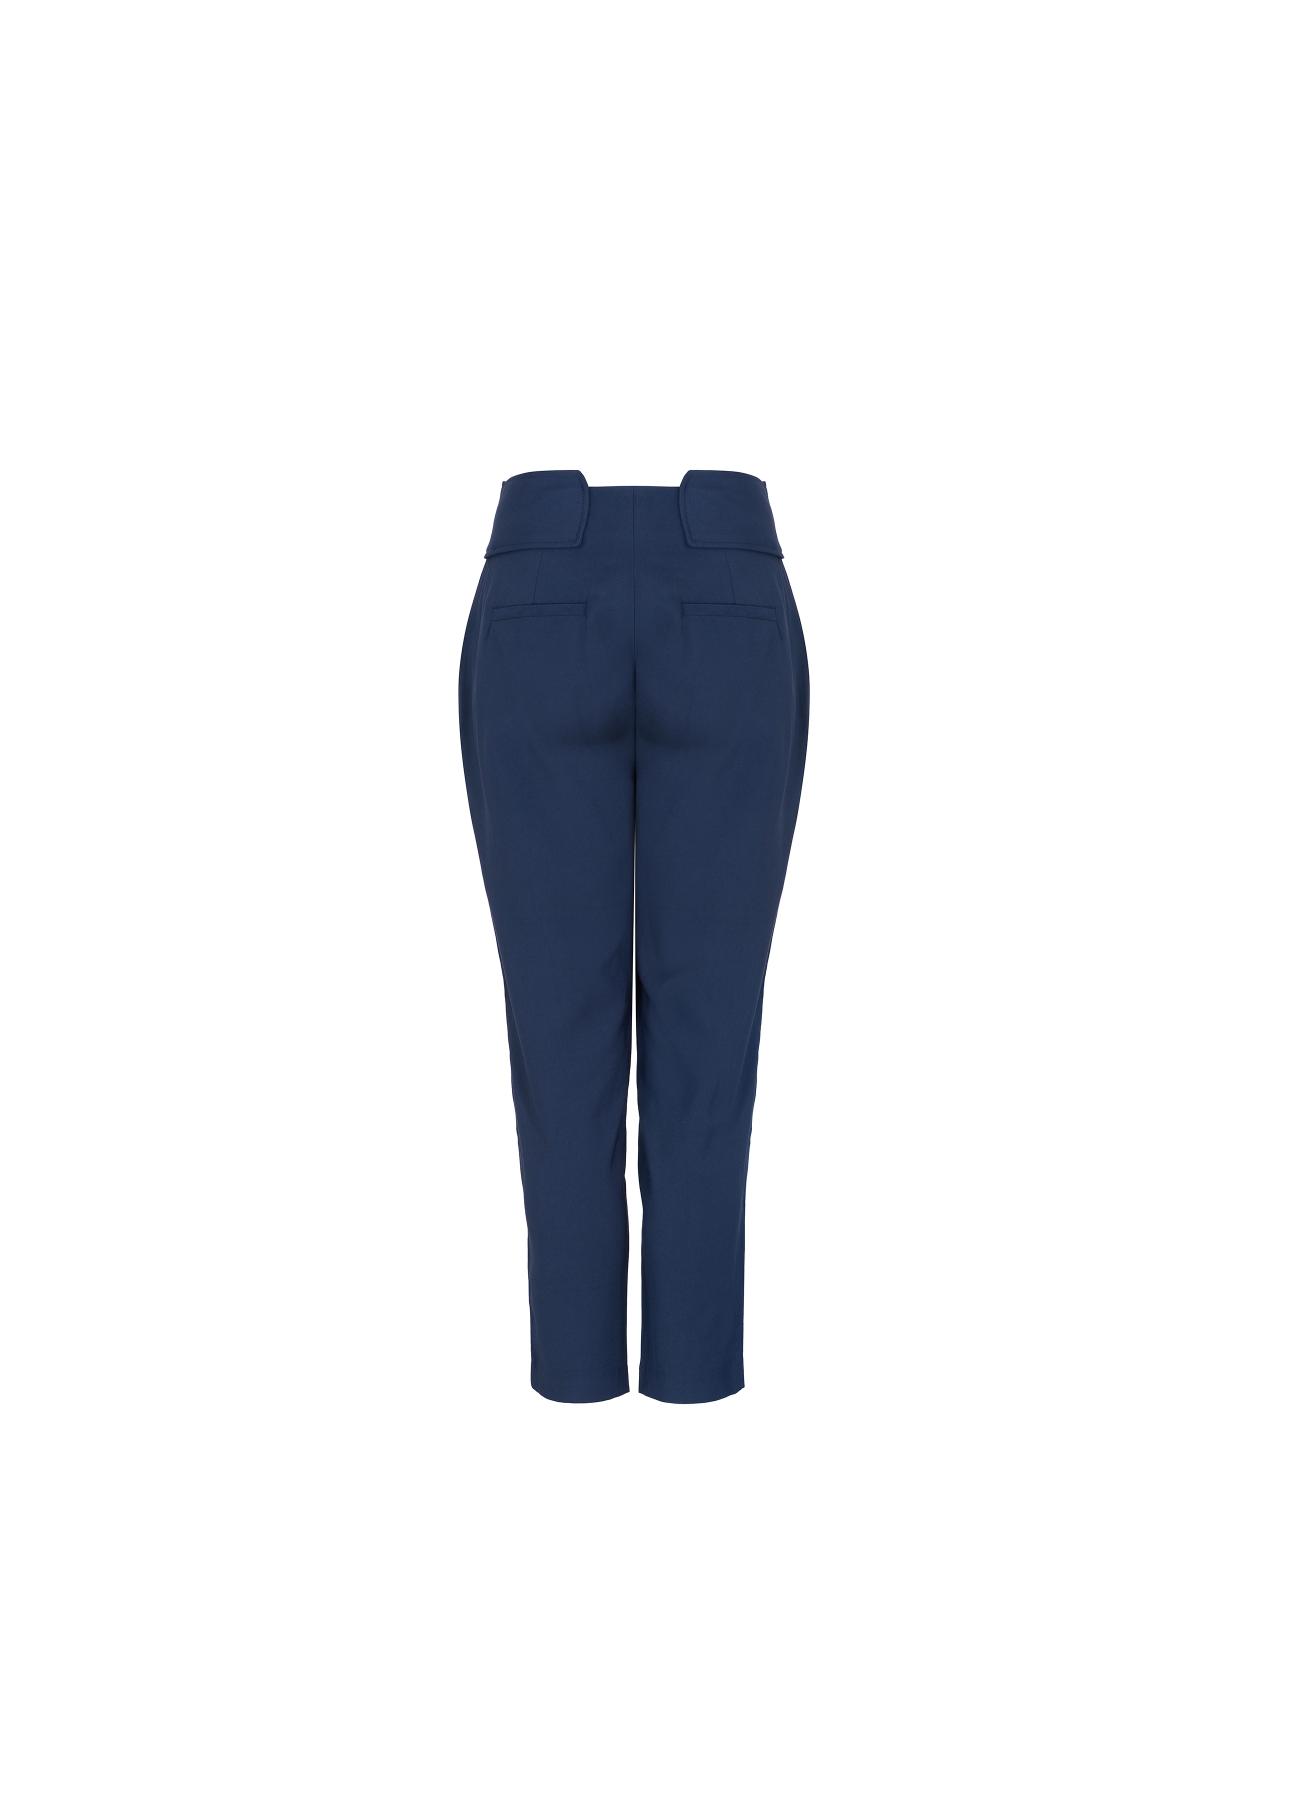 Spodnie damskie SPODT-0028-69(W19)